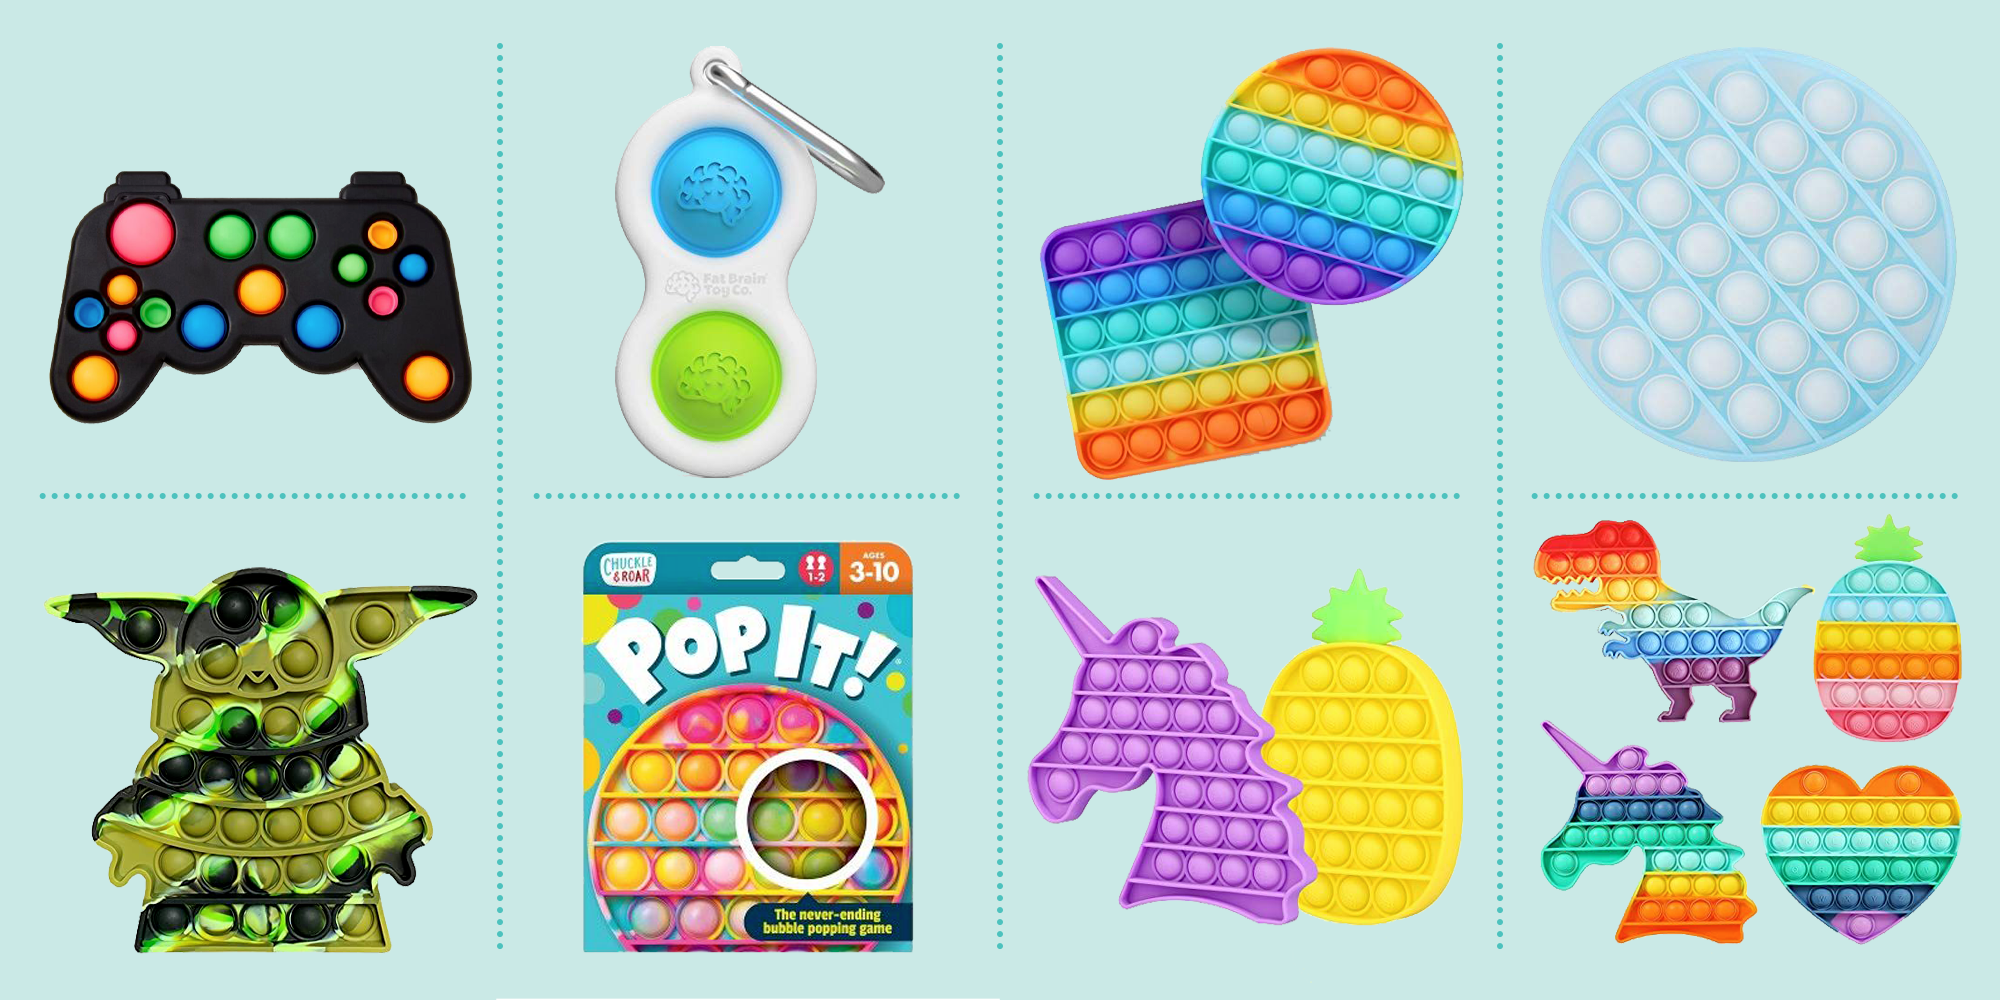 Push Bubble Tie-dye Poppits Fidget Toys Pop its Fidget Spinner Pack 